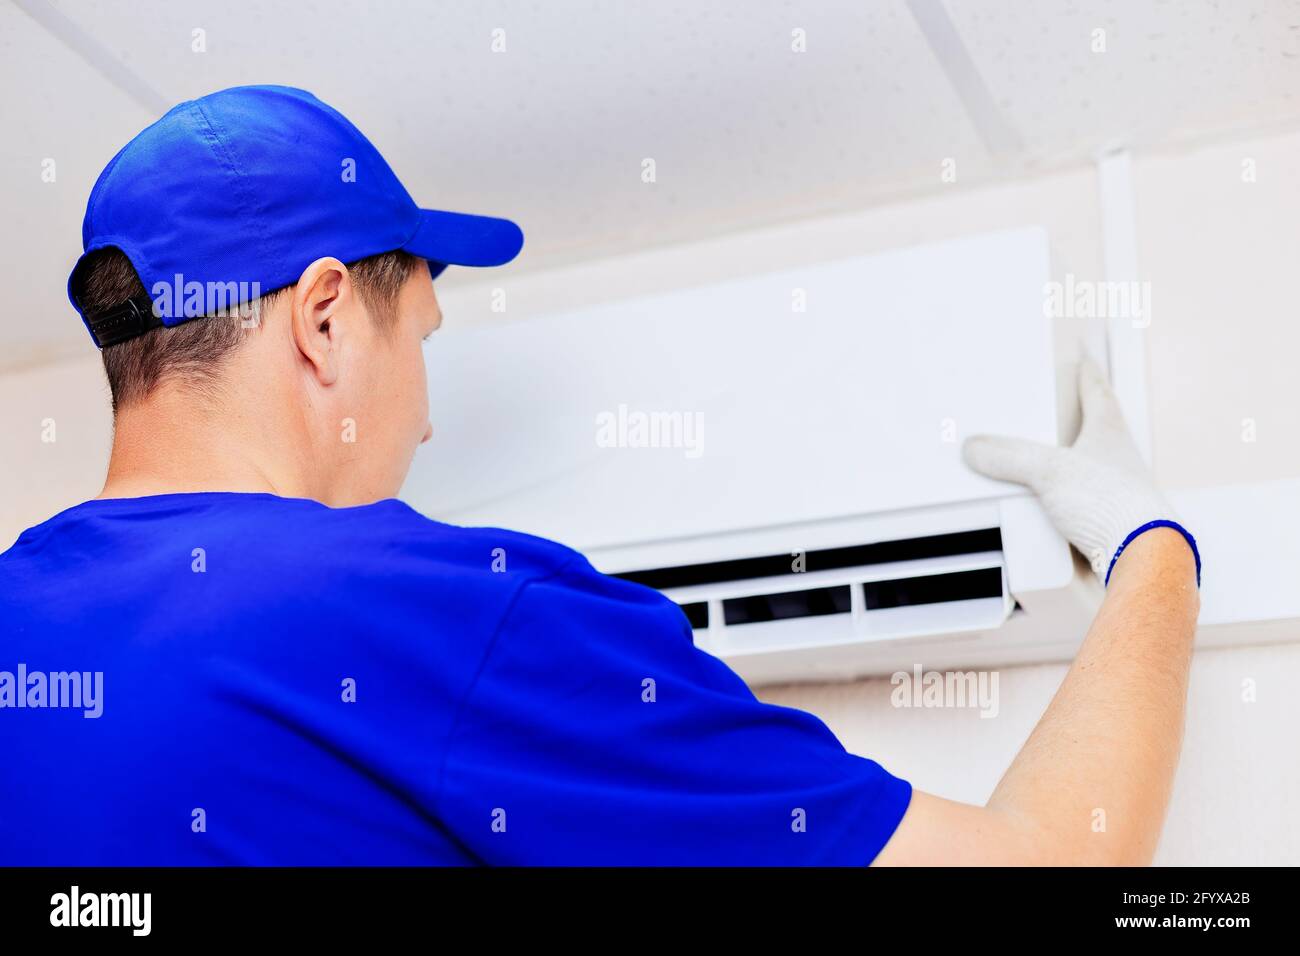 Ein netter Techniker mit blauer Baseballkappe und Overalls fixiert die neue Klimaanlage an der Wand im Zimmer. Porträt eines Arbeiters von hinten. Modell Stockfoto